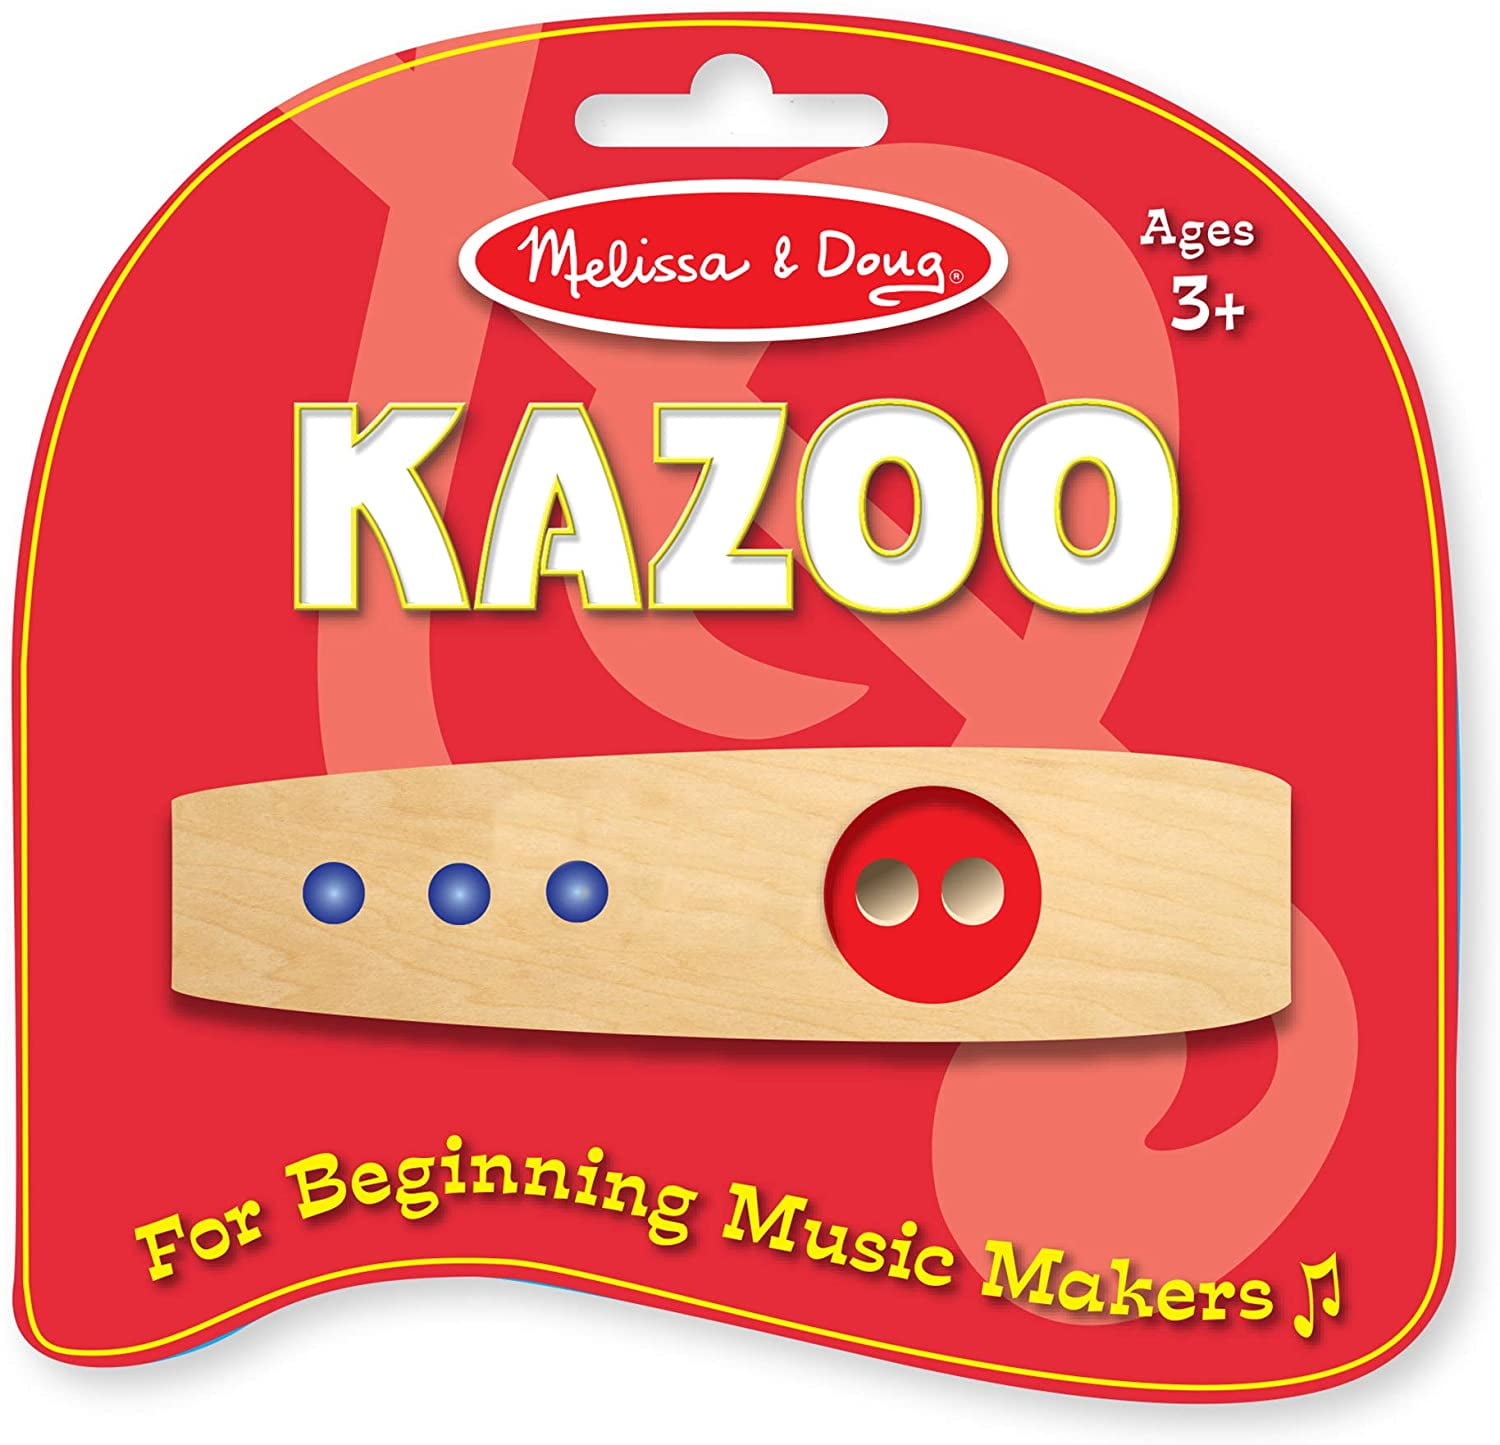 Melissa & Doug 1300 Making Music Beginner Wooden Kazoo 